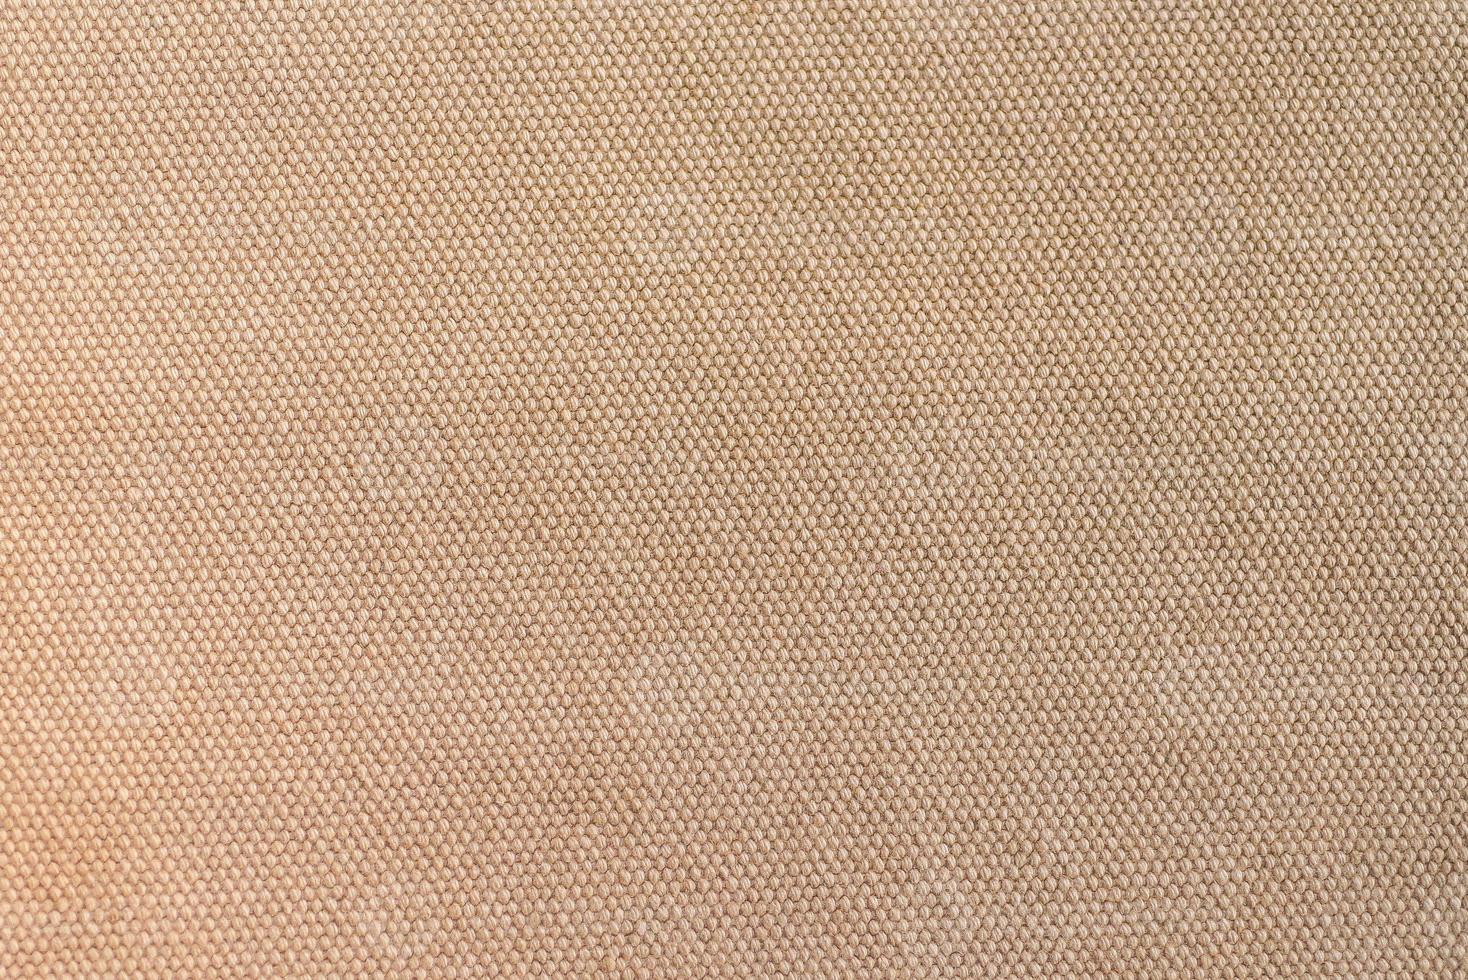 textura de close-up de tecido de lona marrom claro como plano de fundo foto